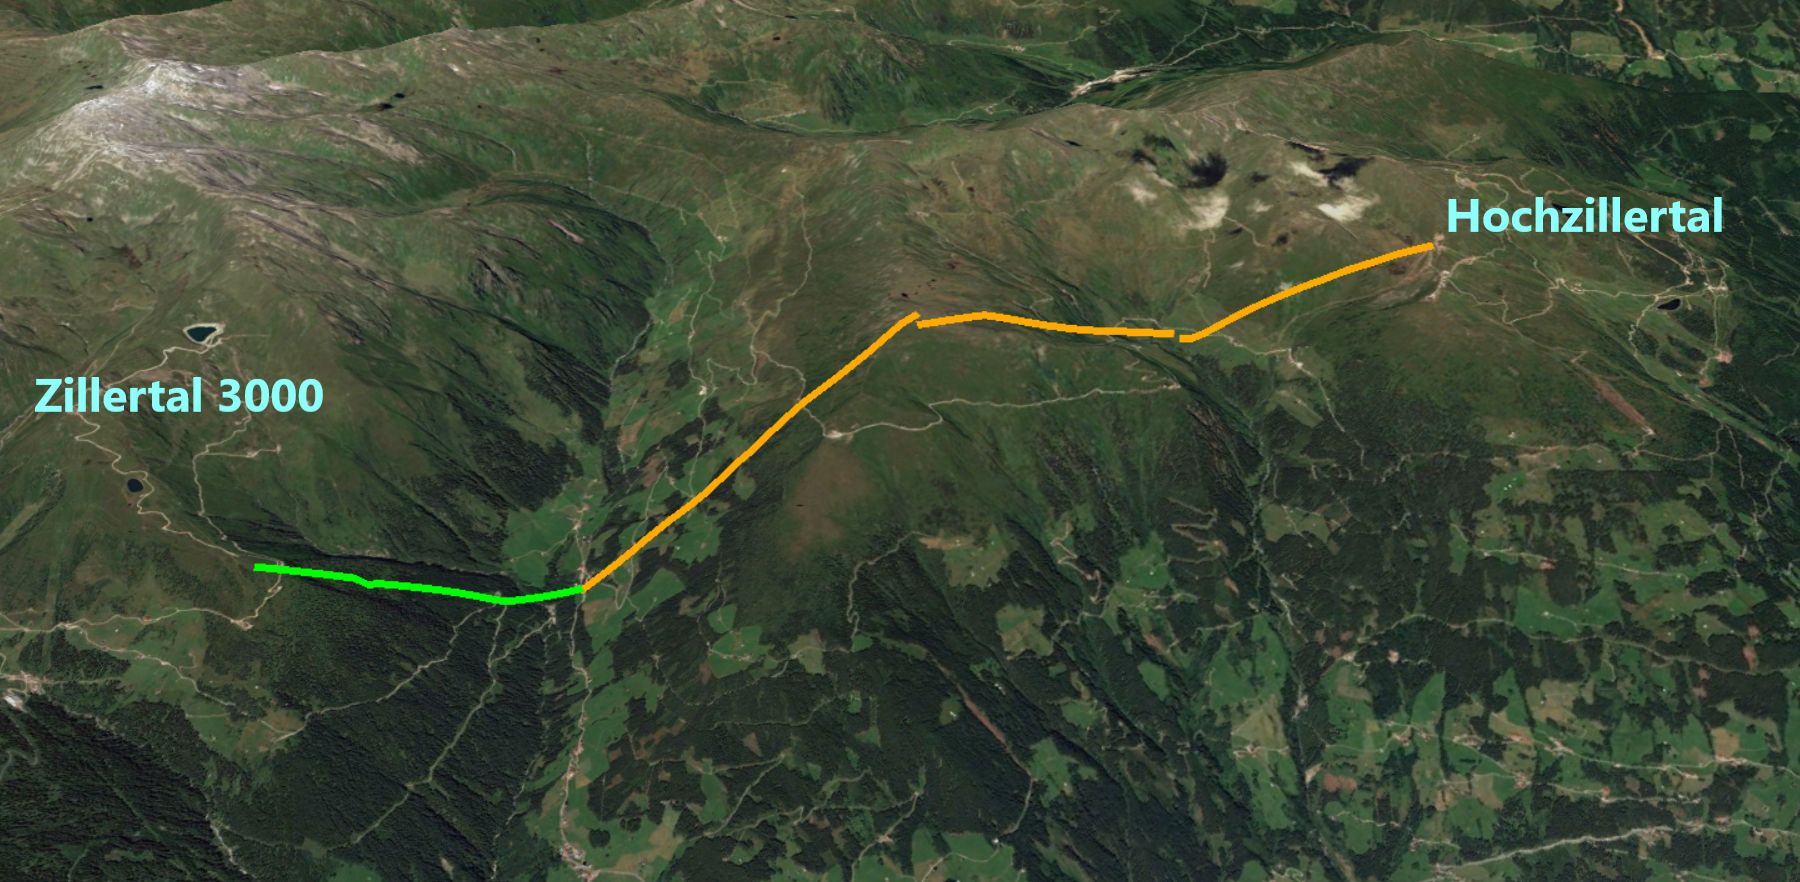 Er zijn slechts drie liften nodig om Hochzillertal met Zillertal 3000 te verbinden (oranje lijnen), in groen staat de nieuwe Möslbahn ingetekend